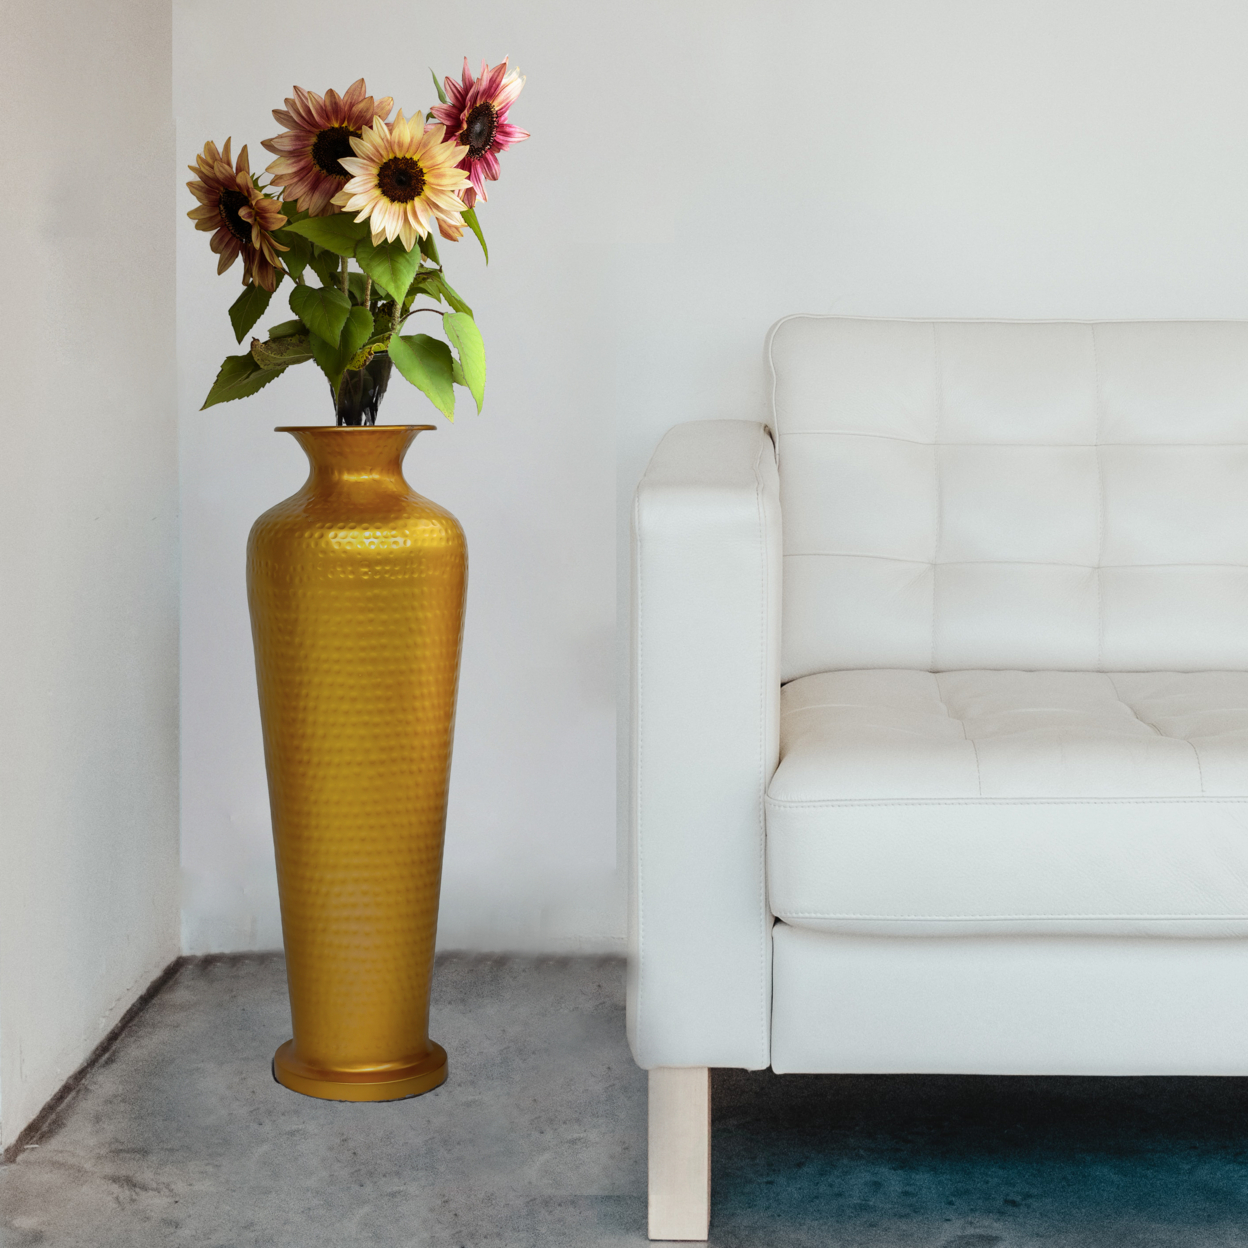 Decorative Modern Gold Metal Hammered Floor Flower Vase For Entryway